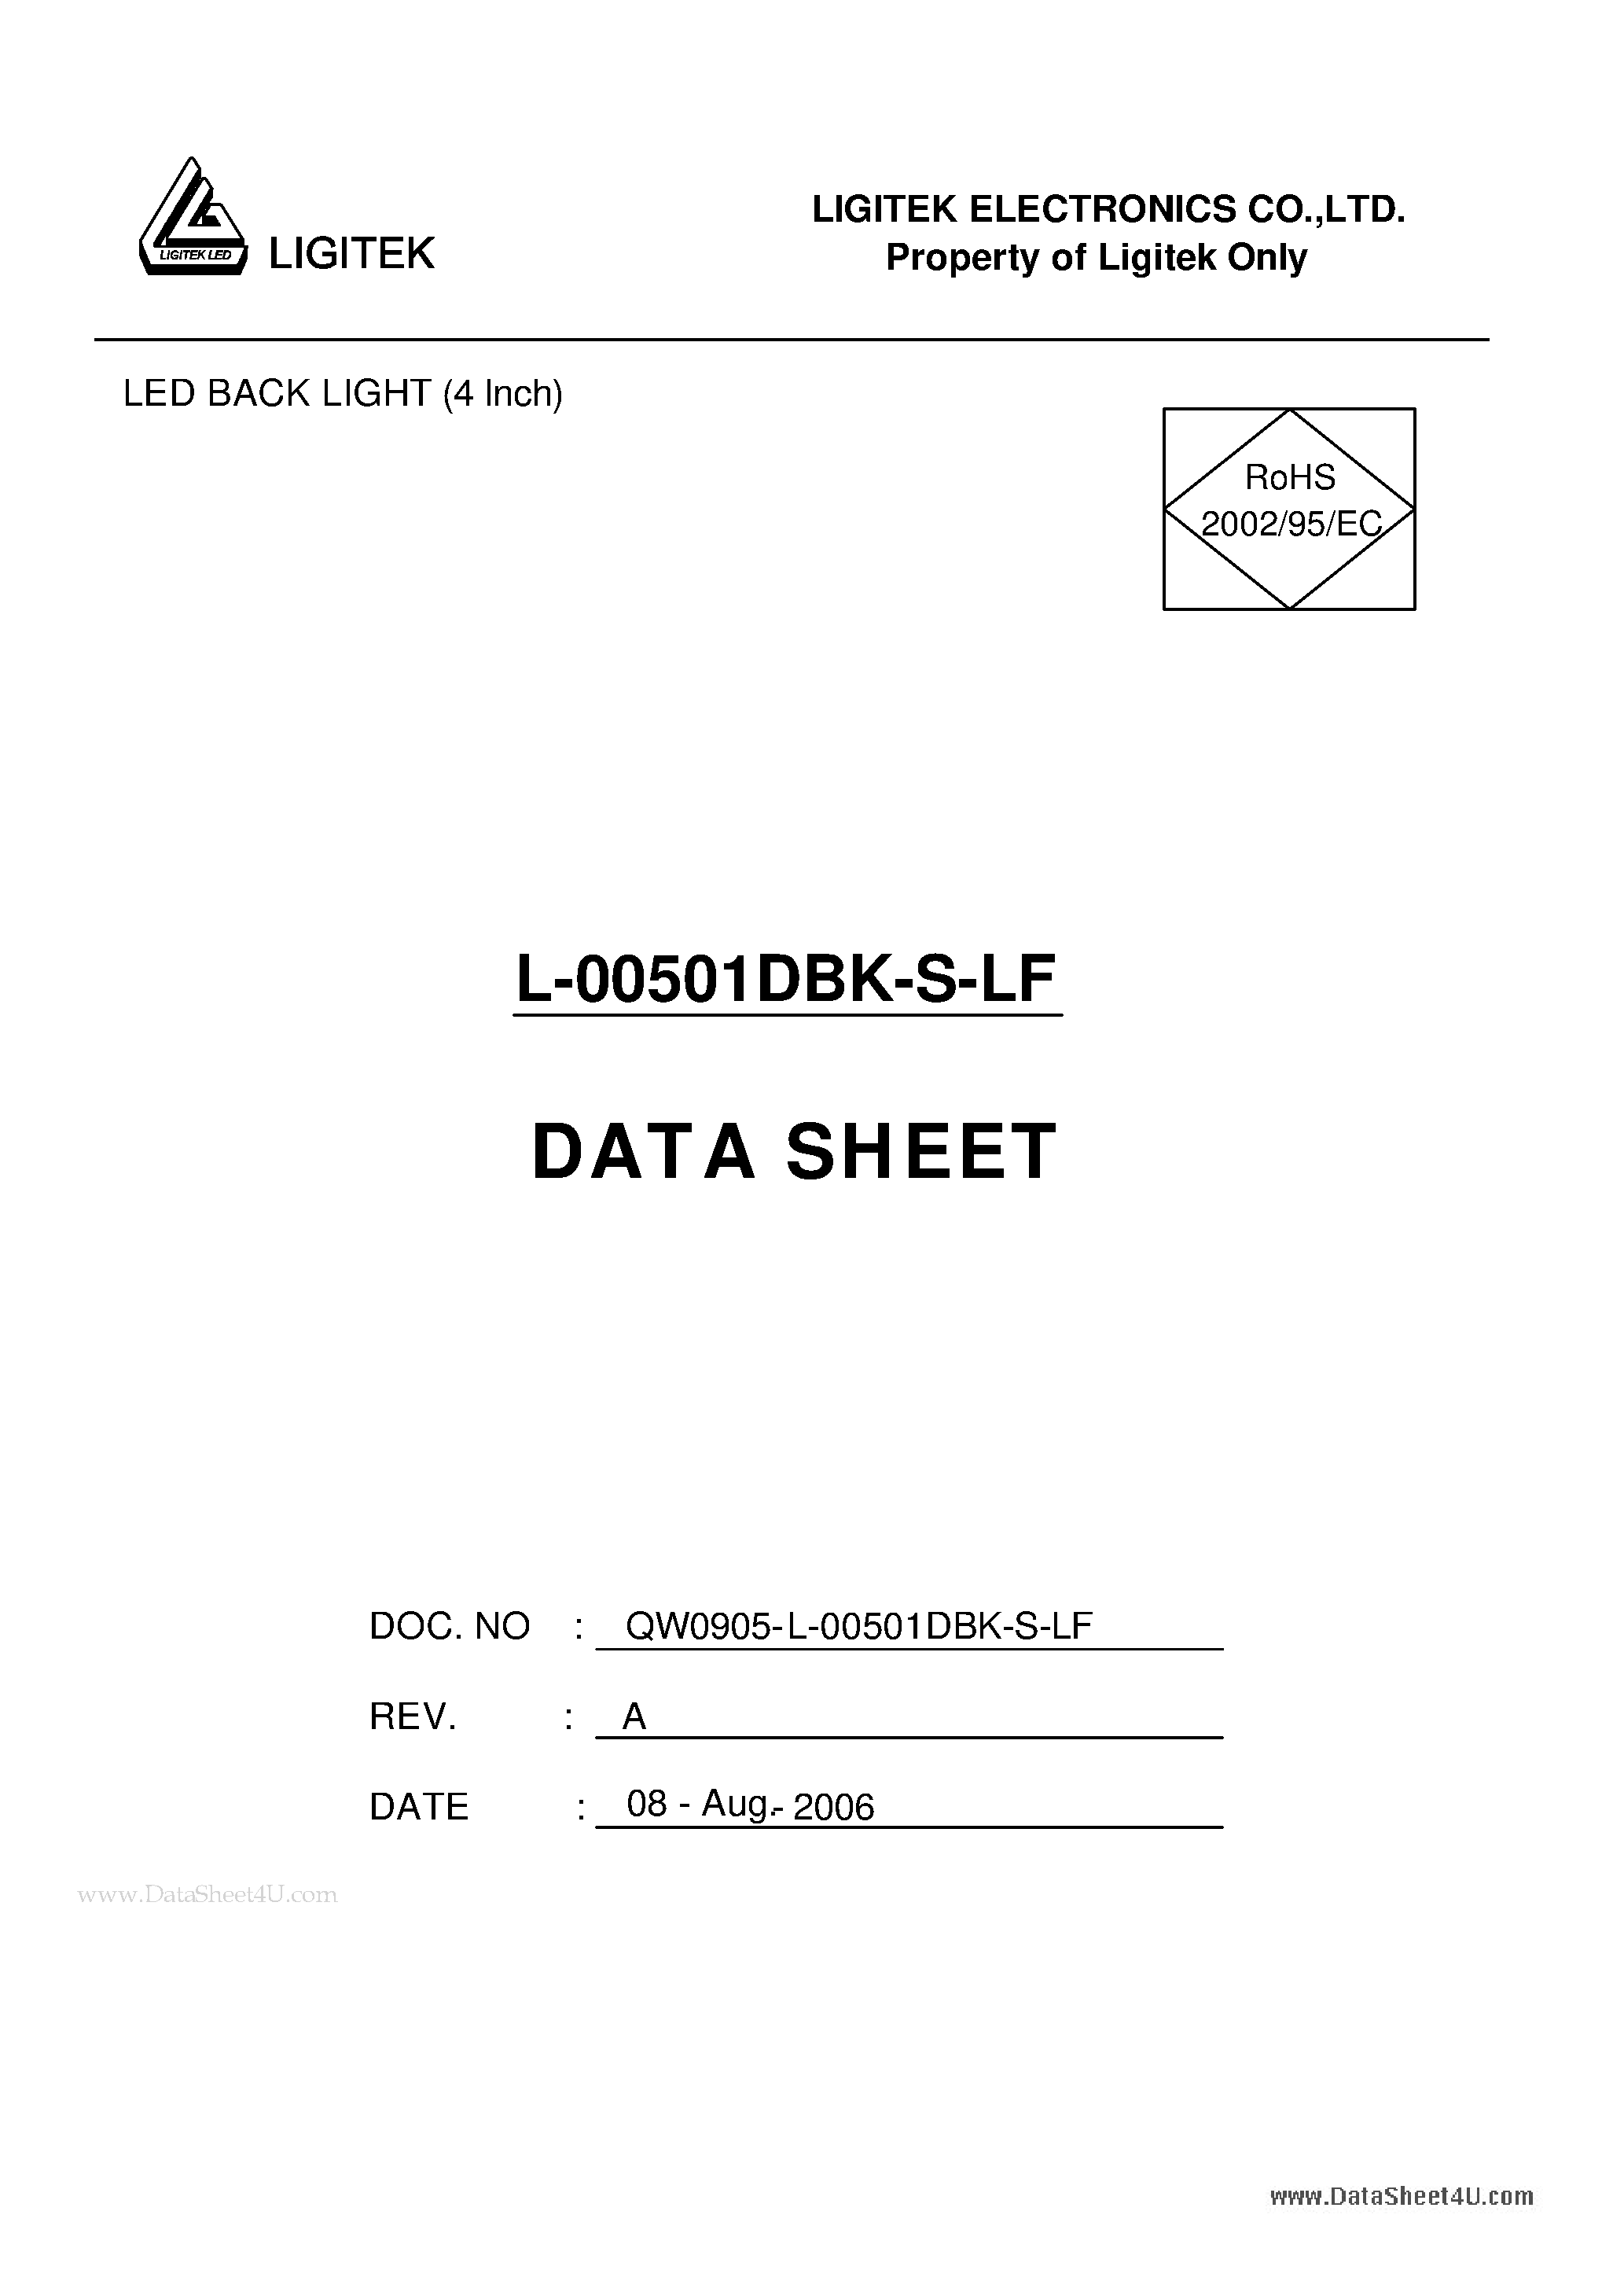 Даташит L-00501DBK-S-LF-LED BACK LIGHT (4 Inch) страница 1